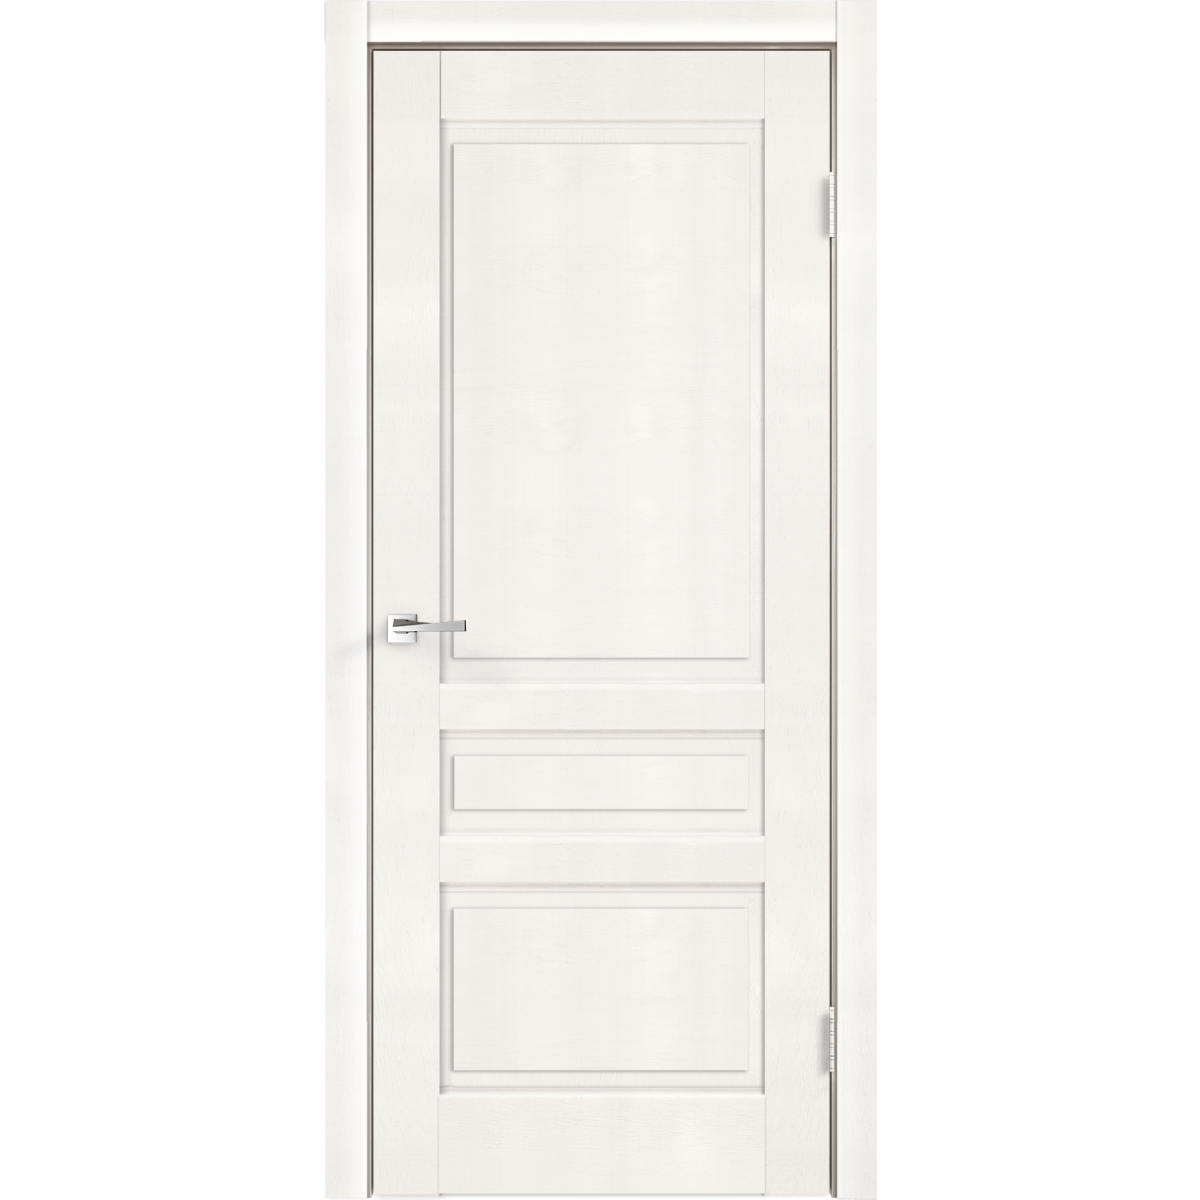 Дверь межкомнатная глухая «Летиция», 90x200 см, ПВХ, цвет дуб пломбир, с фурнитурой